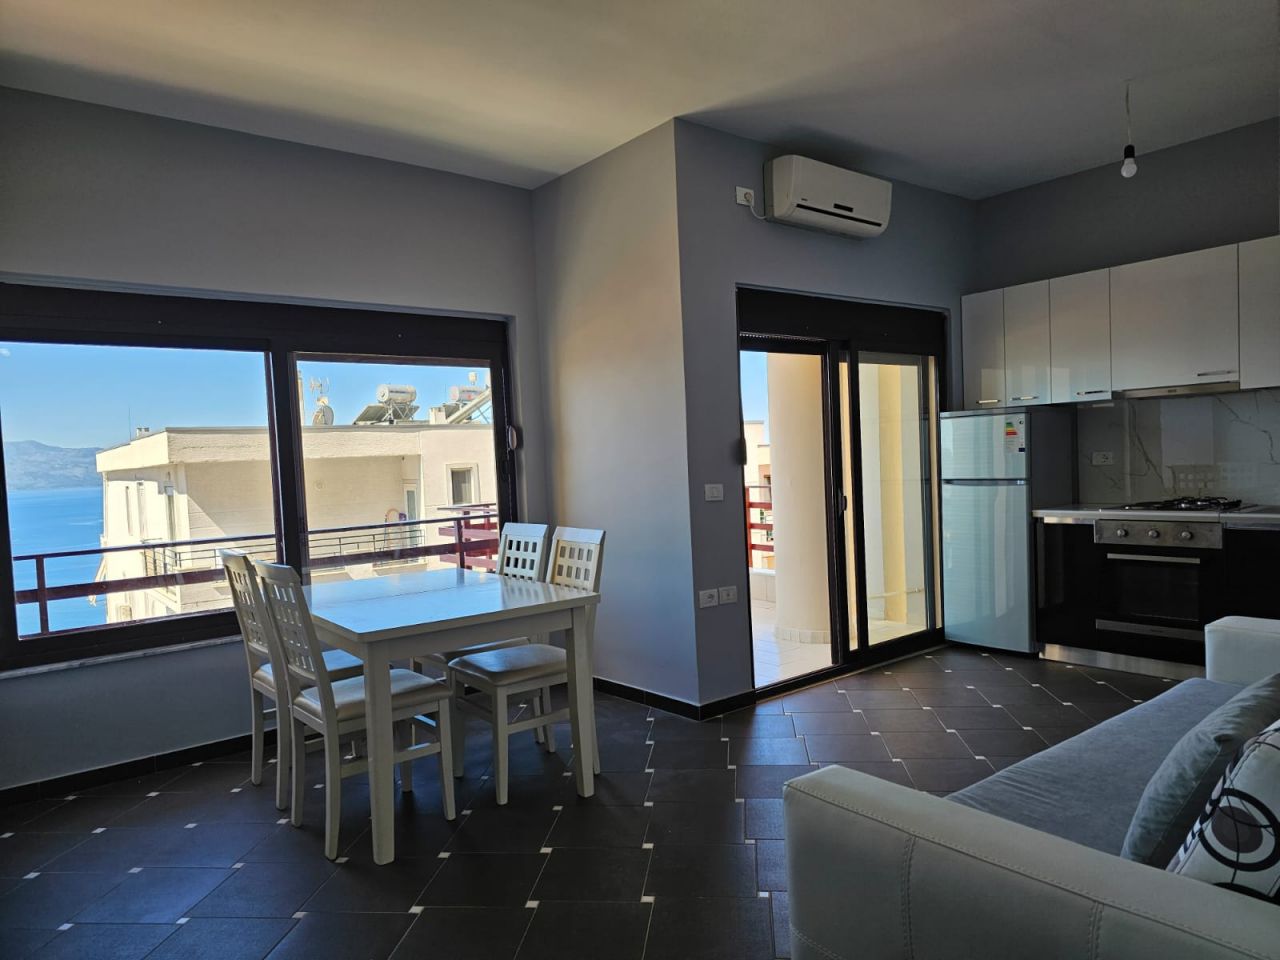 Wohnung zum Verkauf in Saranda, Albanien mit fantastischem Panoramablick auf das Meer über die Bucht von Saranda und die Insel Korfu